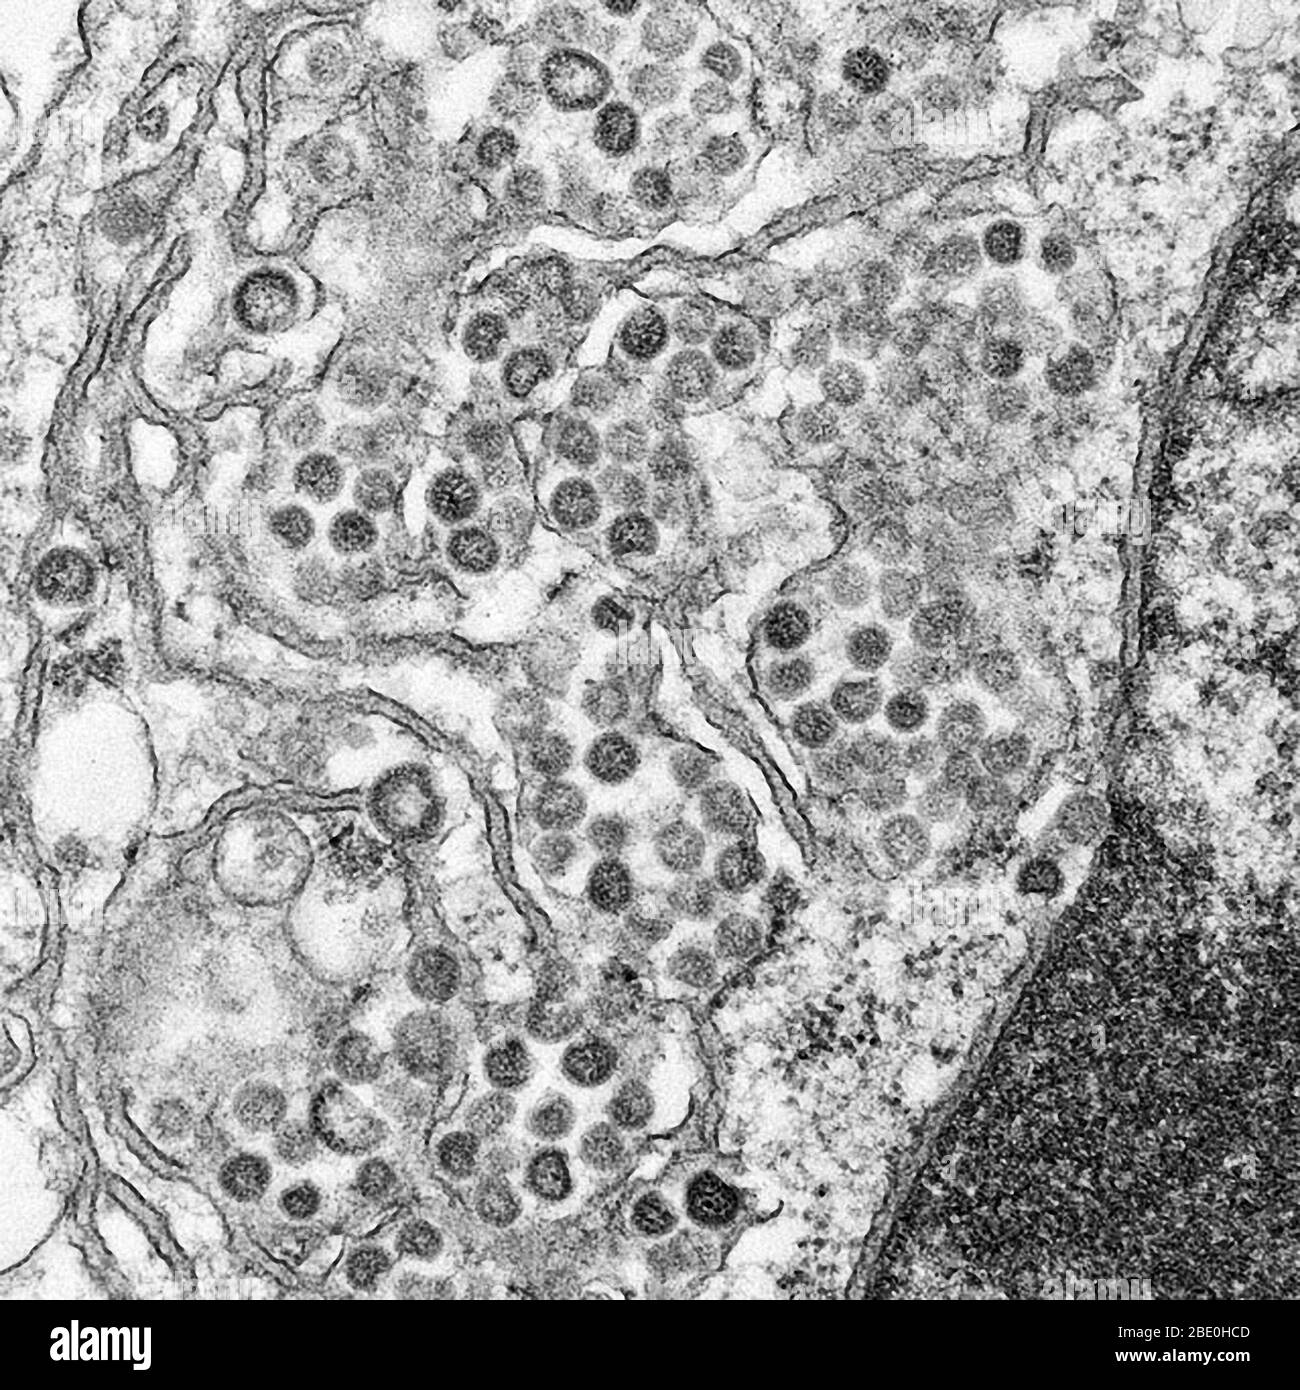 Micrografia elettronica a trasmissione (TEM) di una sezione sottile di MERS-cov, che mostra le particelle sferiche e le sezioni trasversali attraverso il nucleocapside virale. Il coronavirus della sindrome respiratoria del Medio Oriente (MERS-cov) è un nuovo coronavirus (nCoV) riportato per la prima volta il 24 settembre 2012 dal virologo egiziano Dr. Ali Mohamed Zaki a Jeddah, Arabia Saudita. Ha isolato e identificato un coronavirus precedentemente sconosciuto dai polmoni di un paziente maschio di 60 anni con polmonite acuta e insufficienza renale acuta. MERS-cov è il sesto tipo di coronavirus come la SARS (ma ancora distinto da esso e dal comune-c Foto Stock